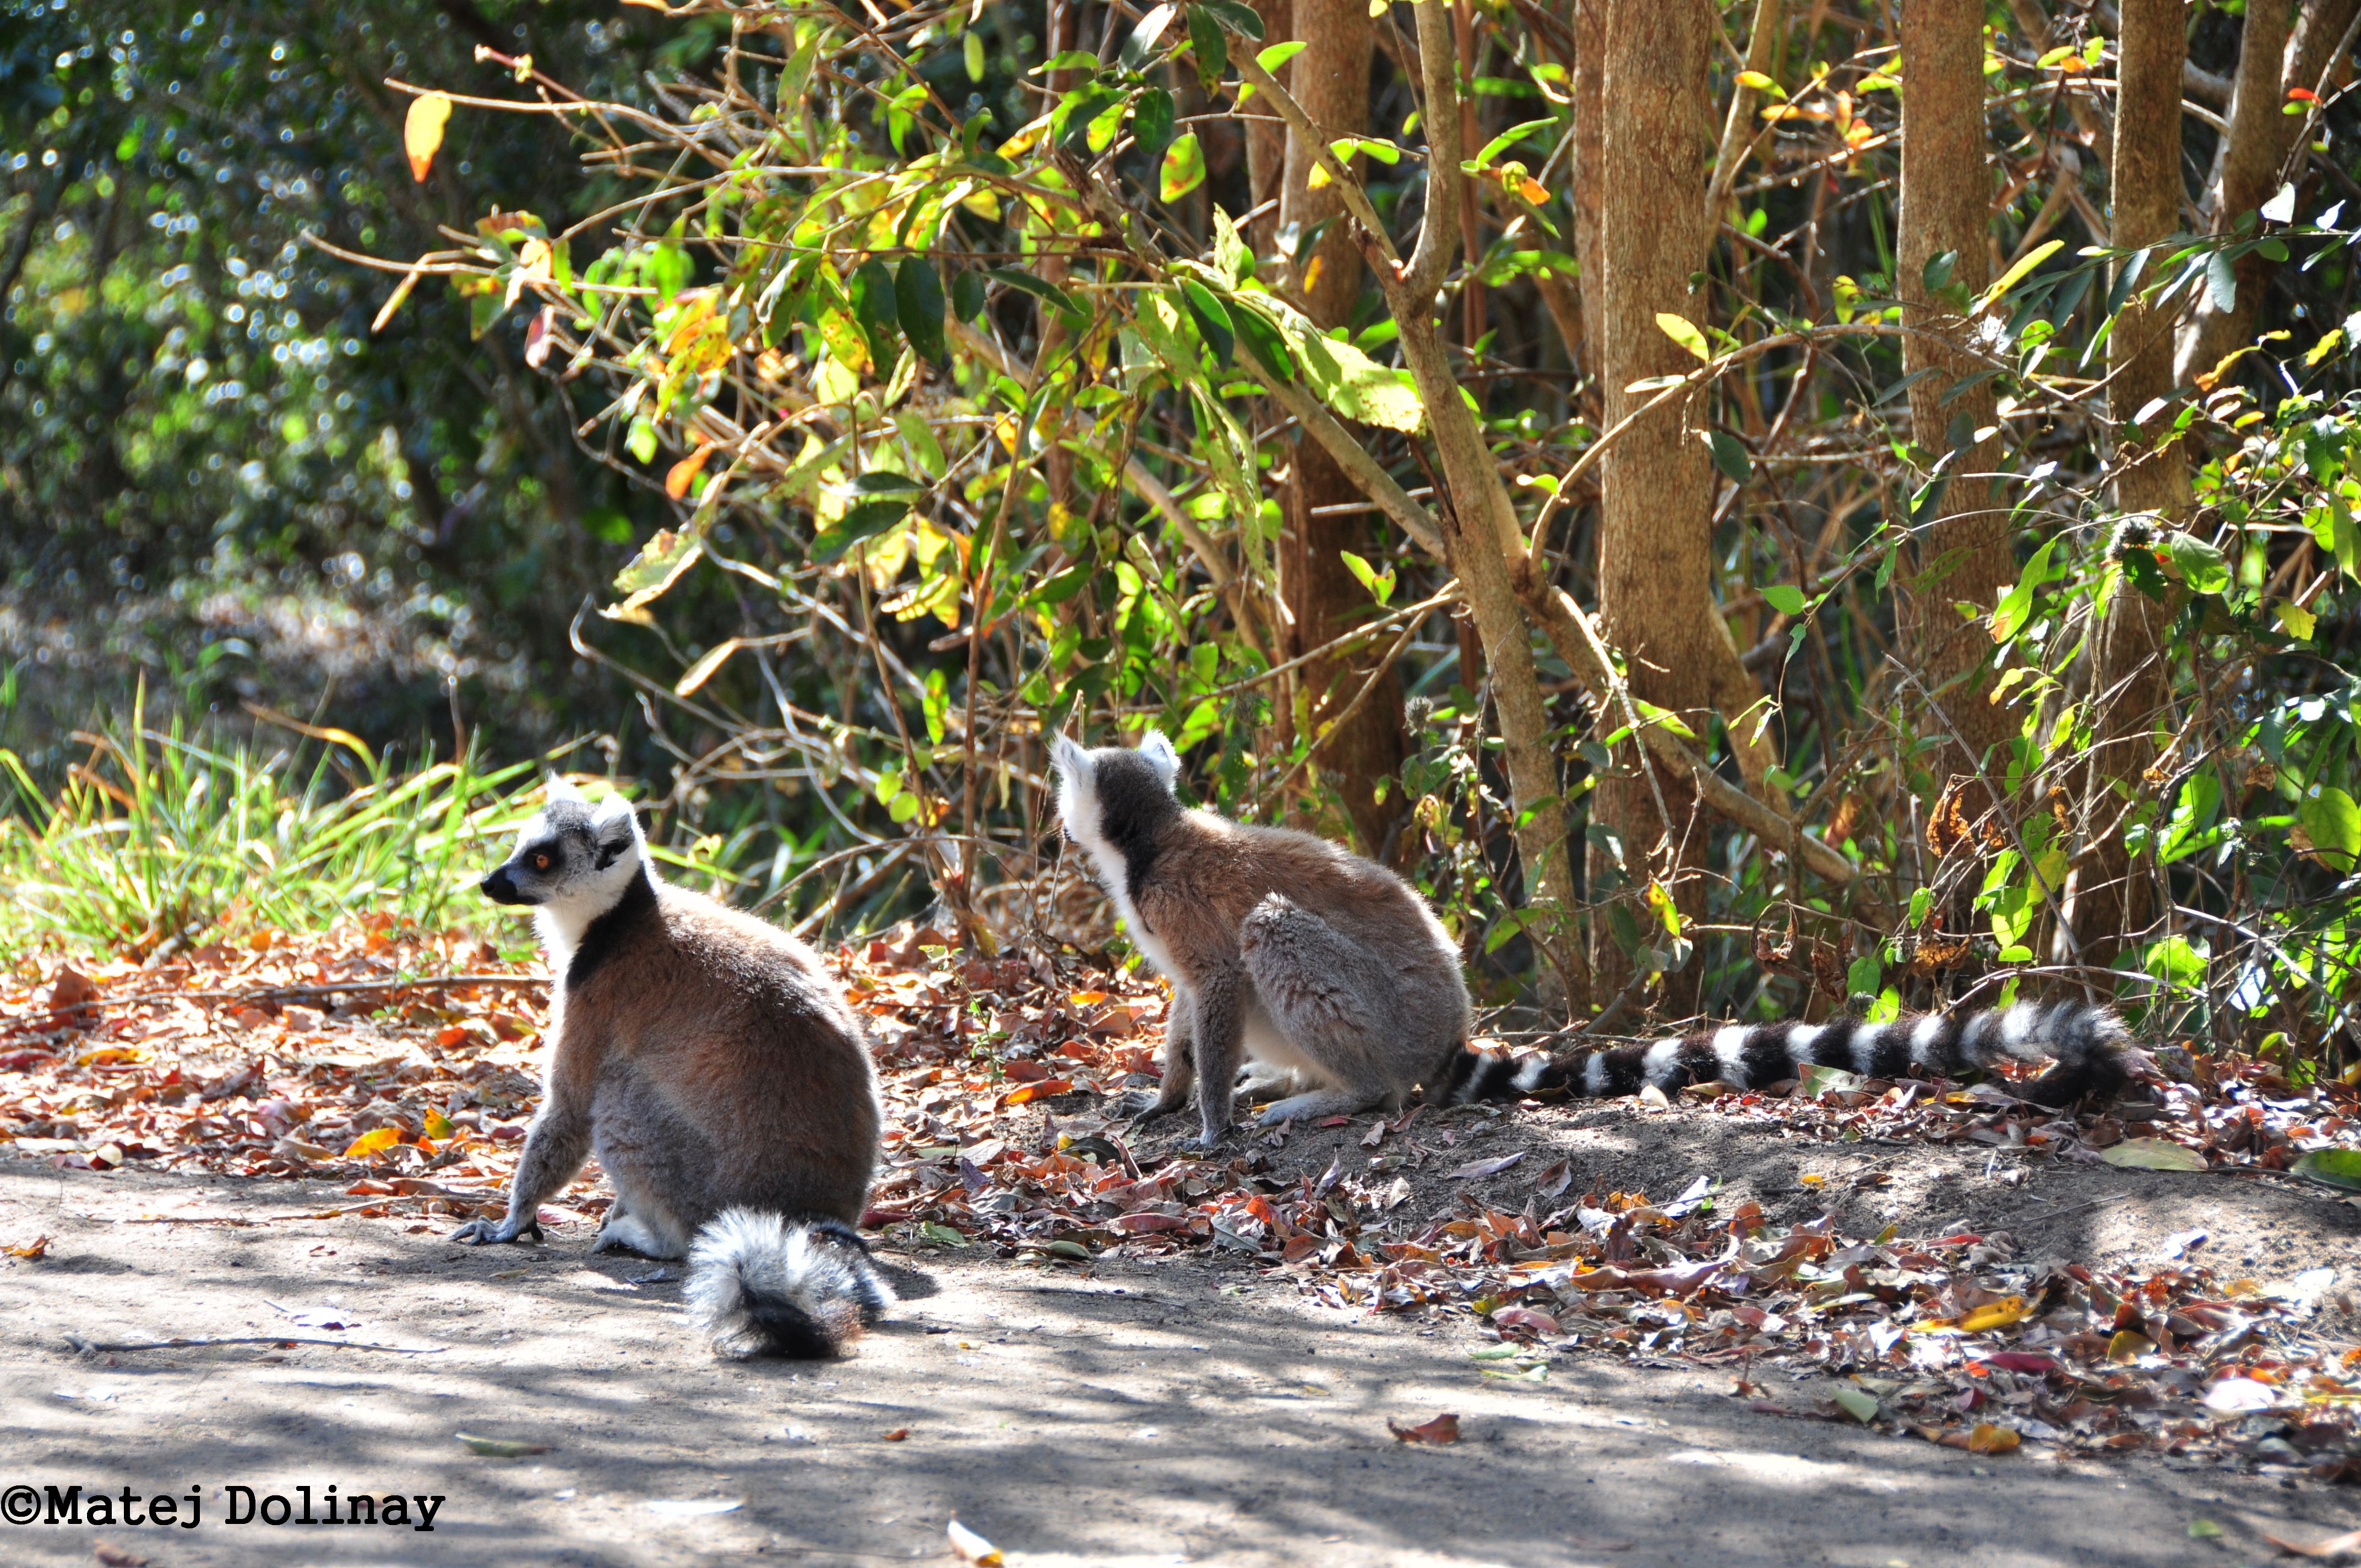 Lemuři kata (Lemur catta), Isalo, Madagaskar (foto: Matej Dolinay)